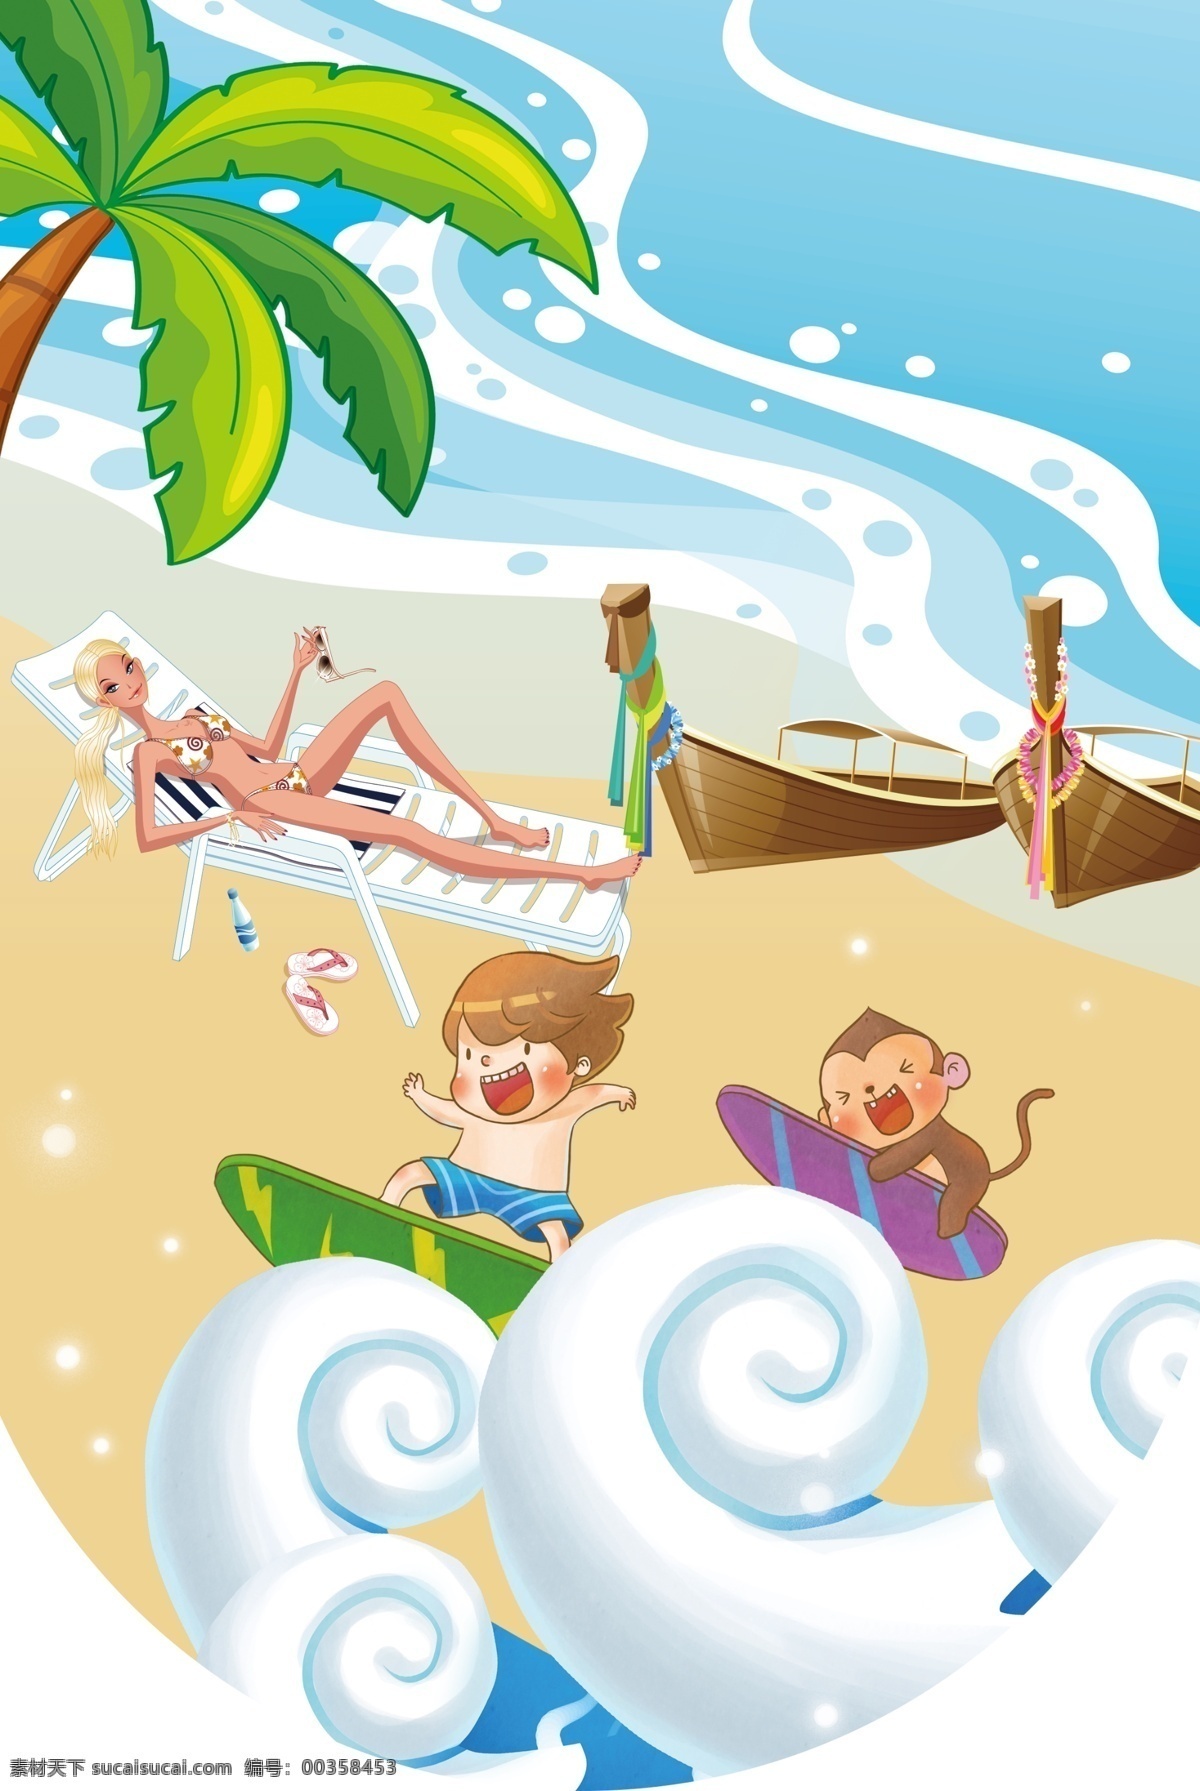 夏季吊旗 吊挂 夏季 海浪 吊旗 造型吊旗 沙滩 椰子树 船 冲浪 美女 泳衣 清爽 夏日